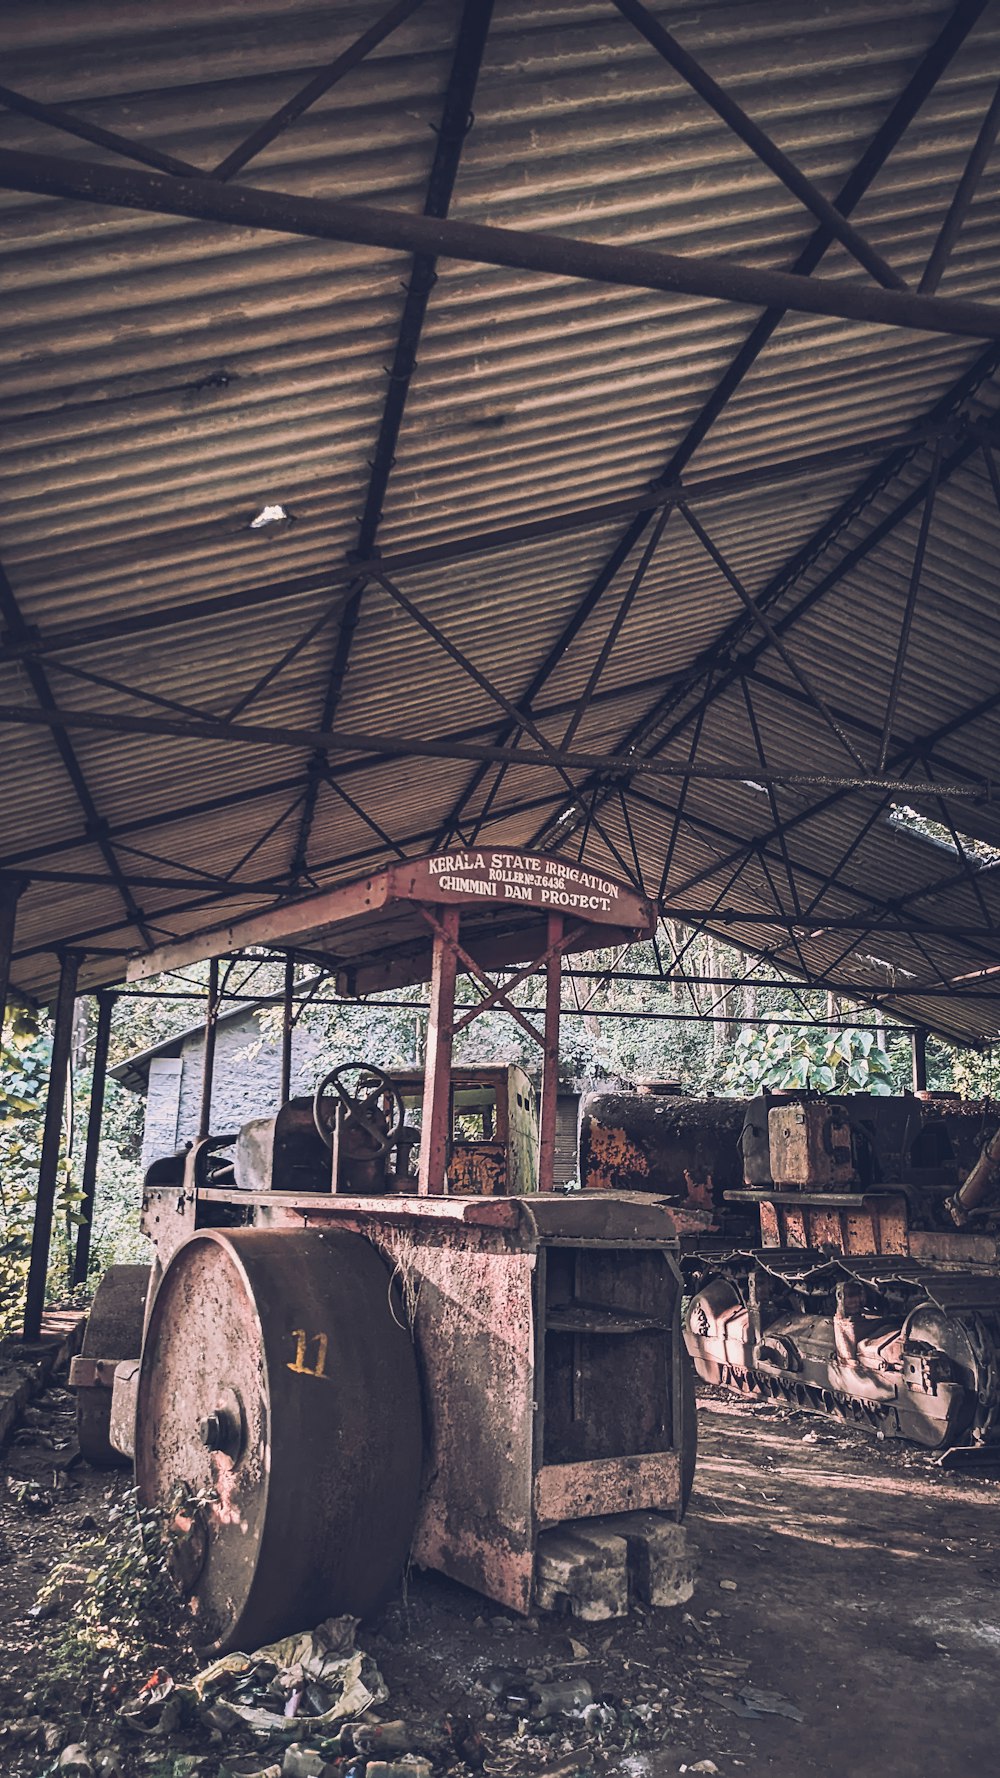 Uma máquina velha e enferrujada está sob um telhado